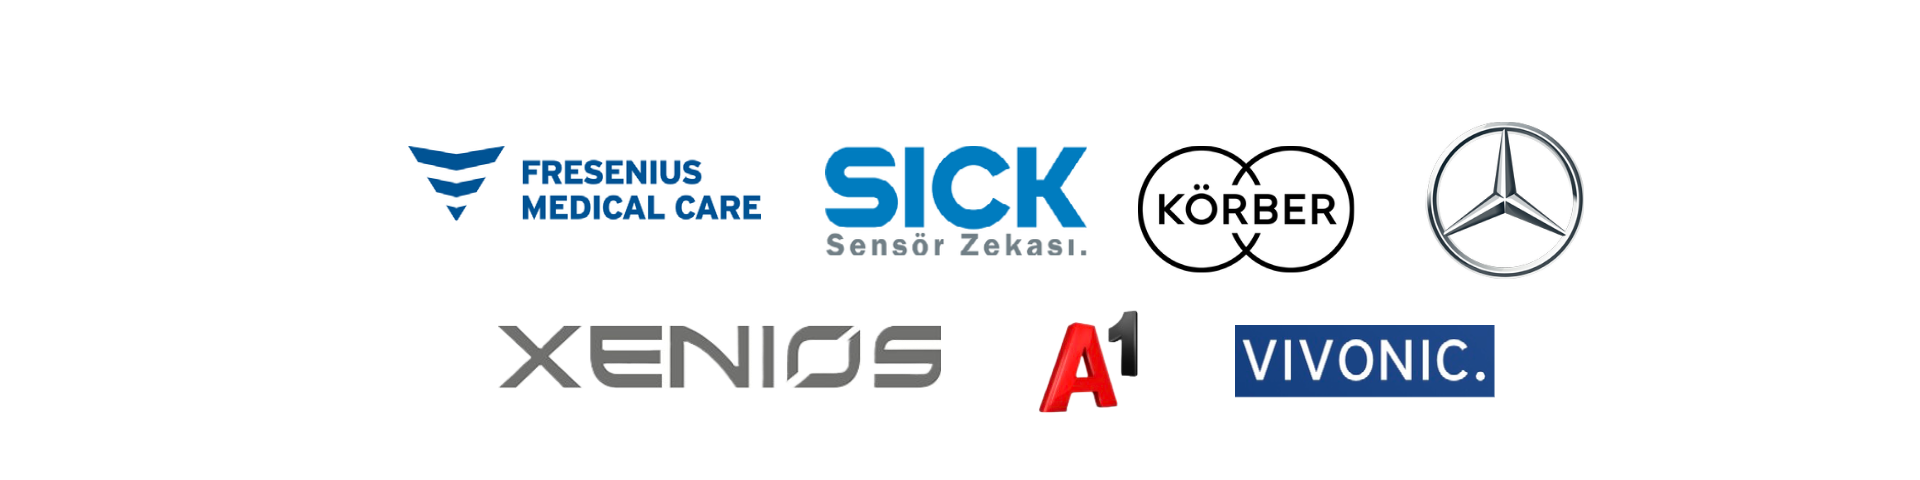 Logos A1, Körber, Sick, Fresenius, Xenios, Vivonic